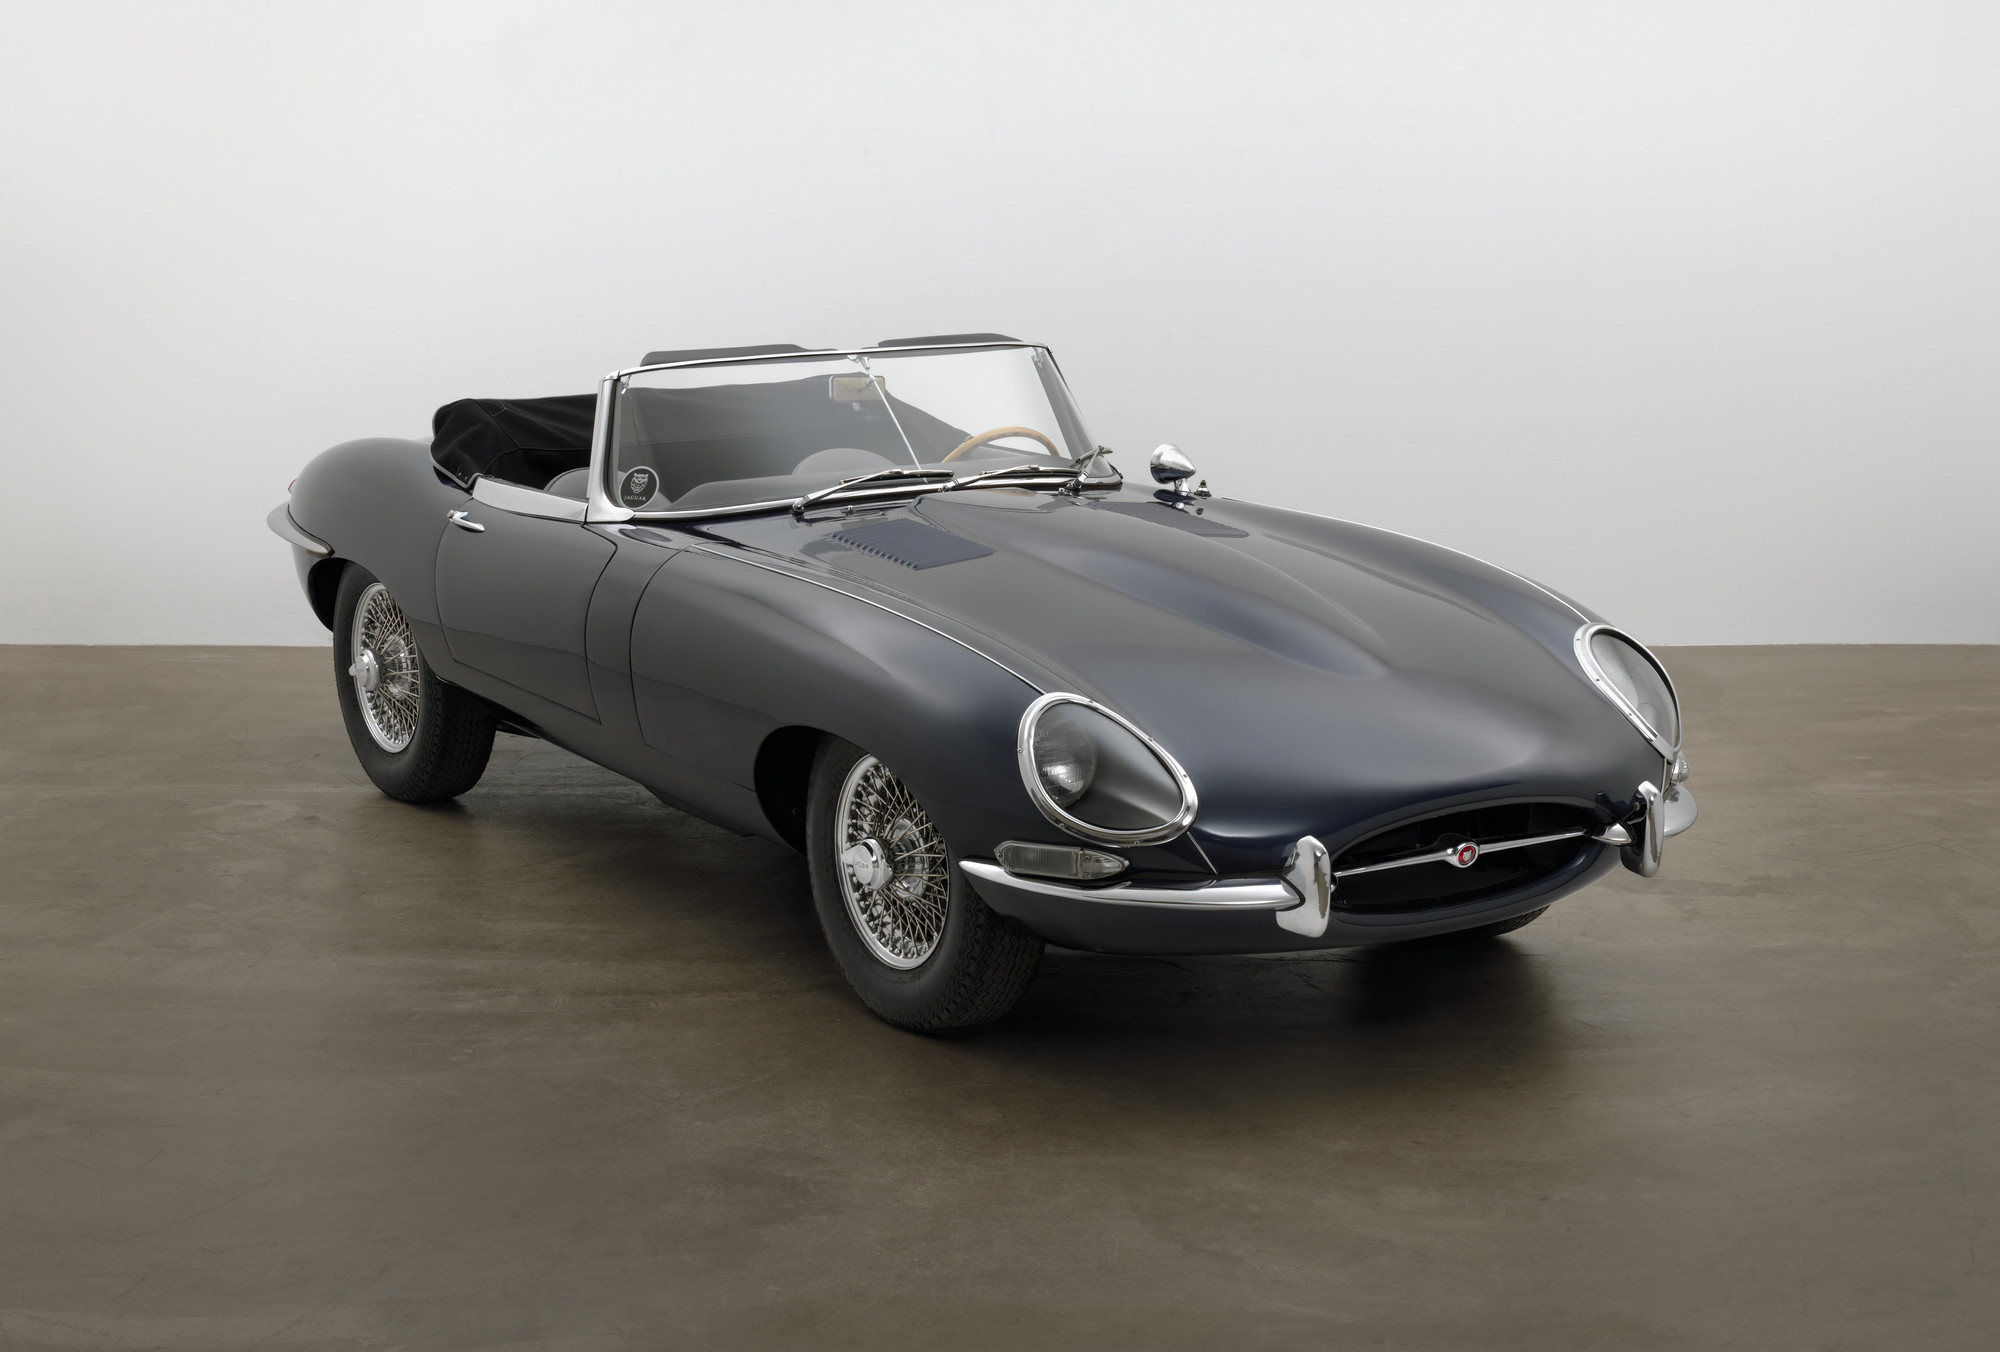 Betjening mulig ven dedikation Refining the Sports Car: Jaguar's E-Type | MoMA